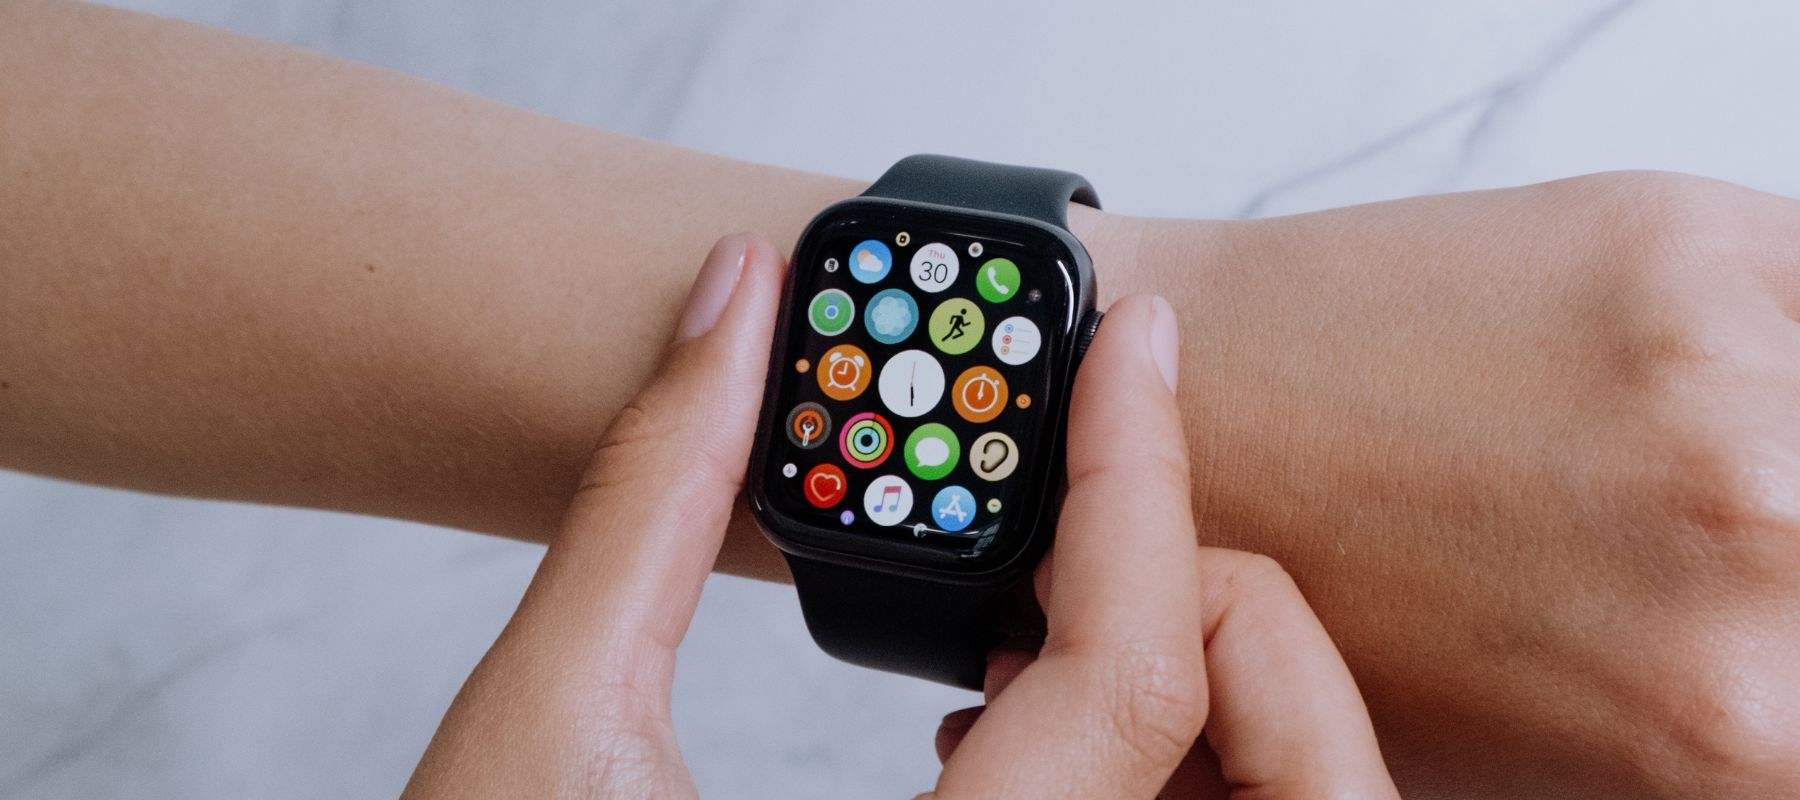 Trucos calculadora Apple Watch: propina, porcentajes y mucho más